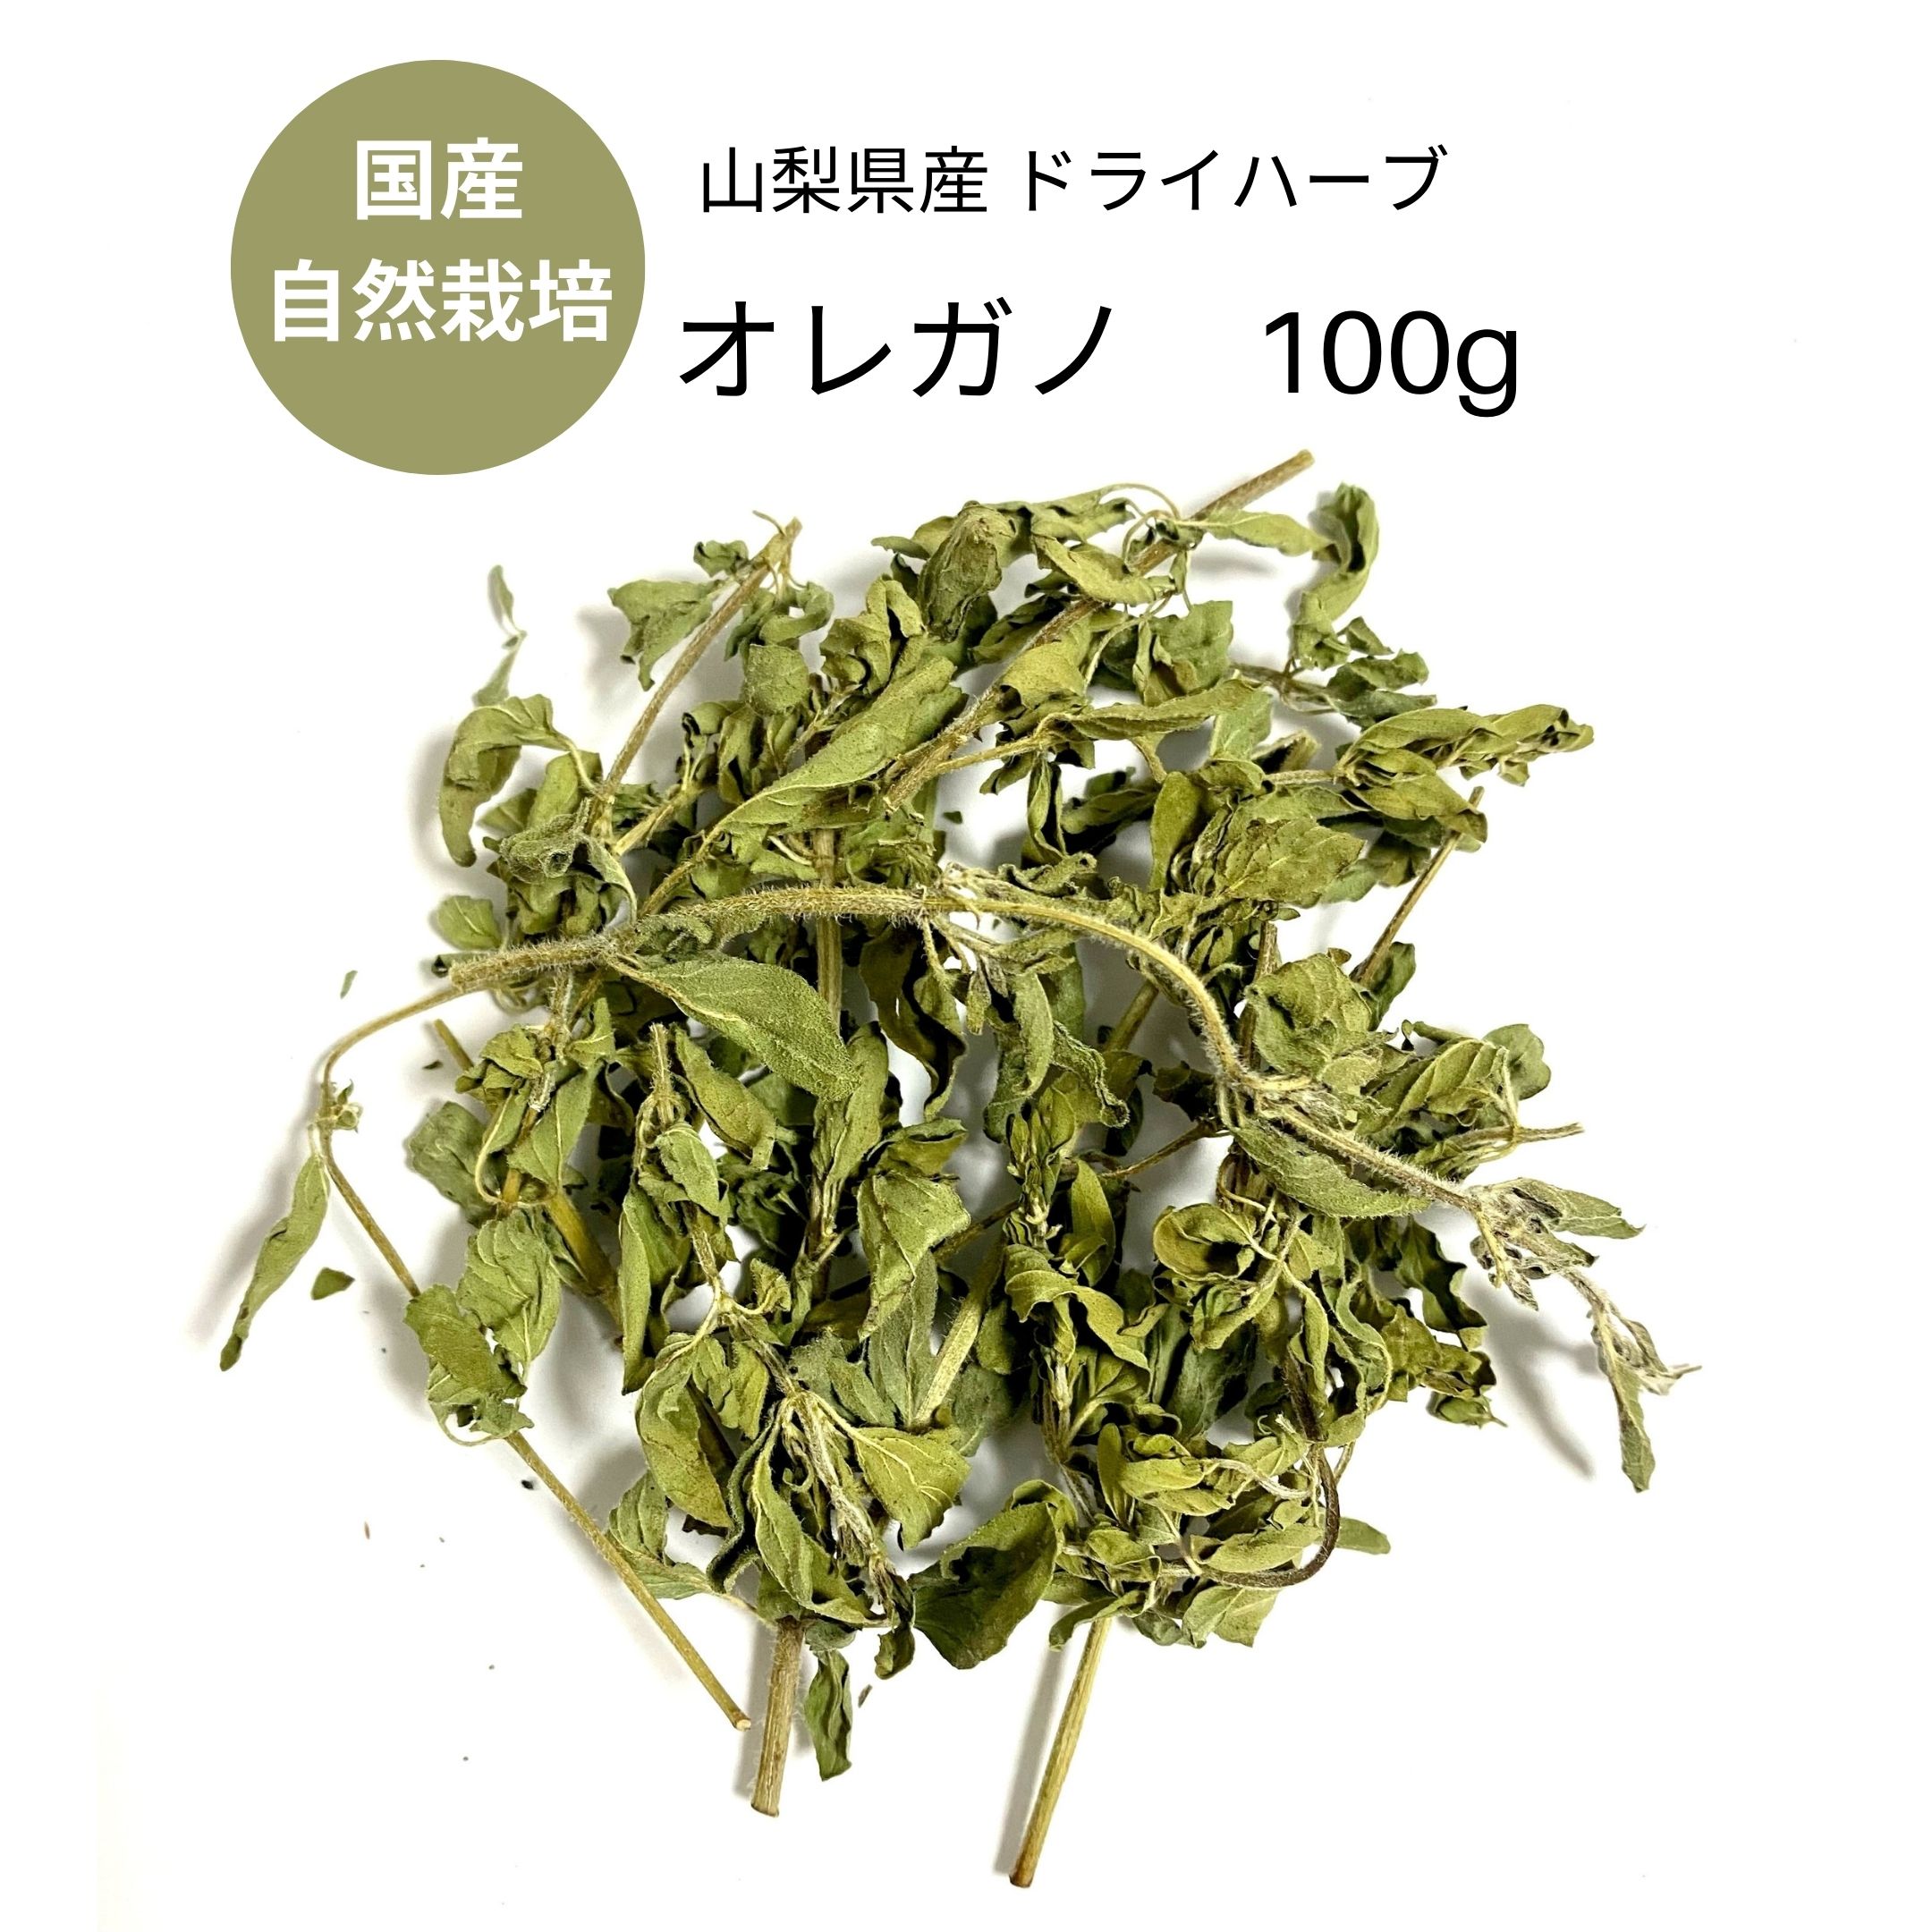 楽天市場 ドライハーブ オレガノ Fuji Herbs